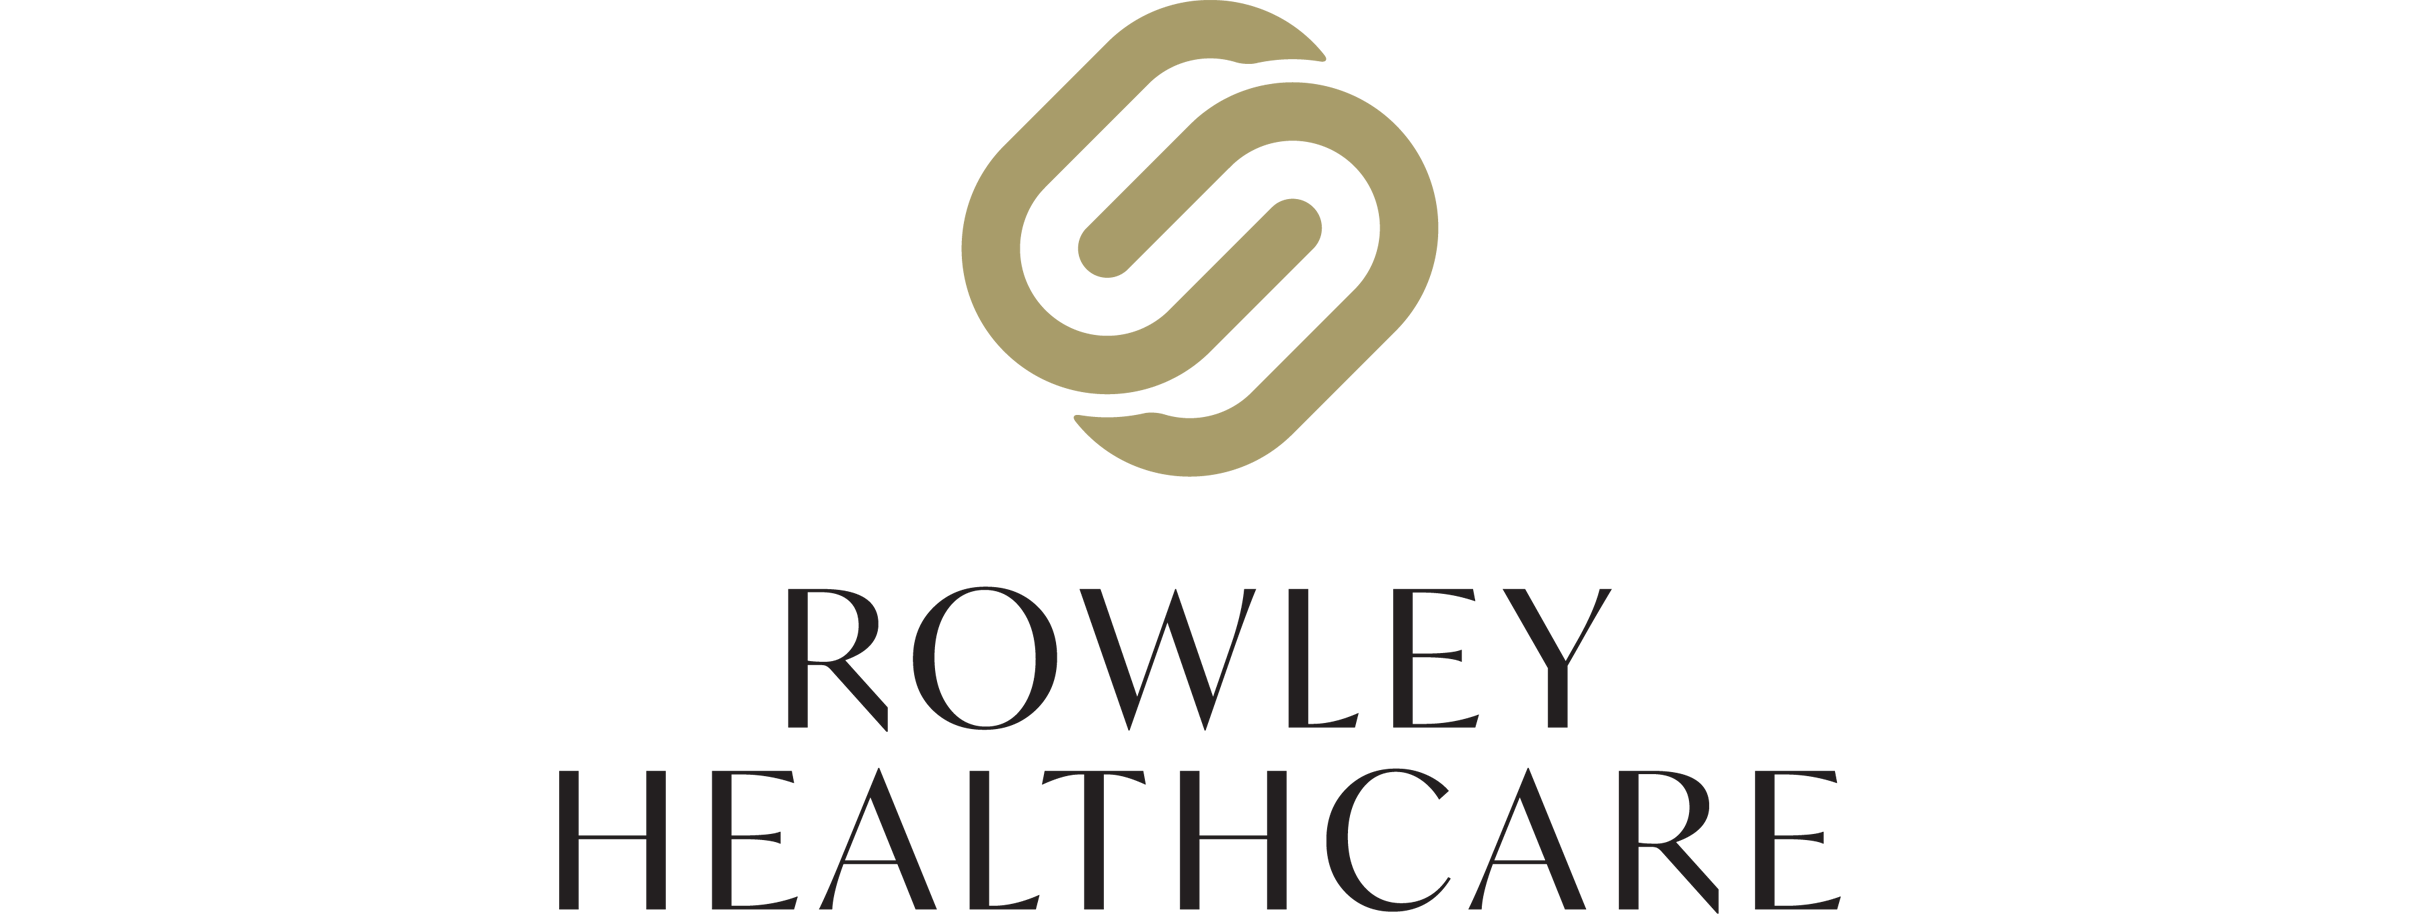 Rowley Healthcare